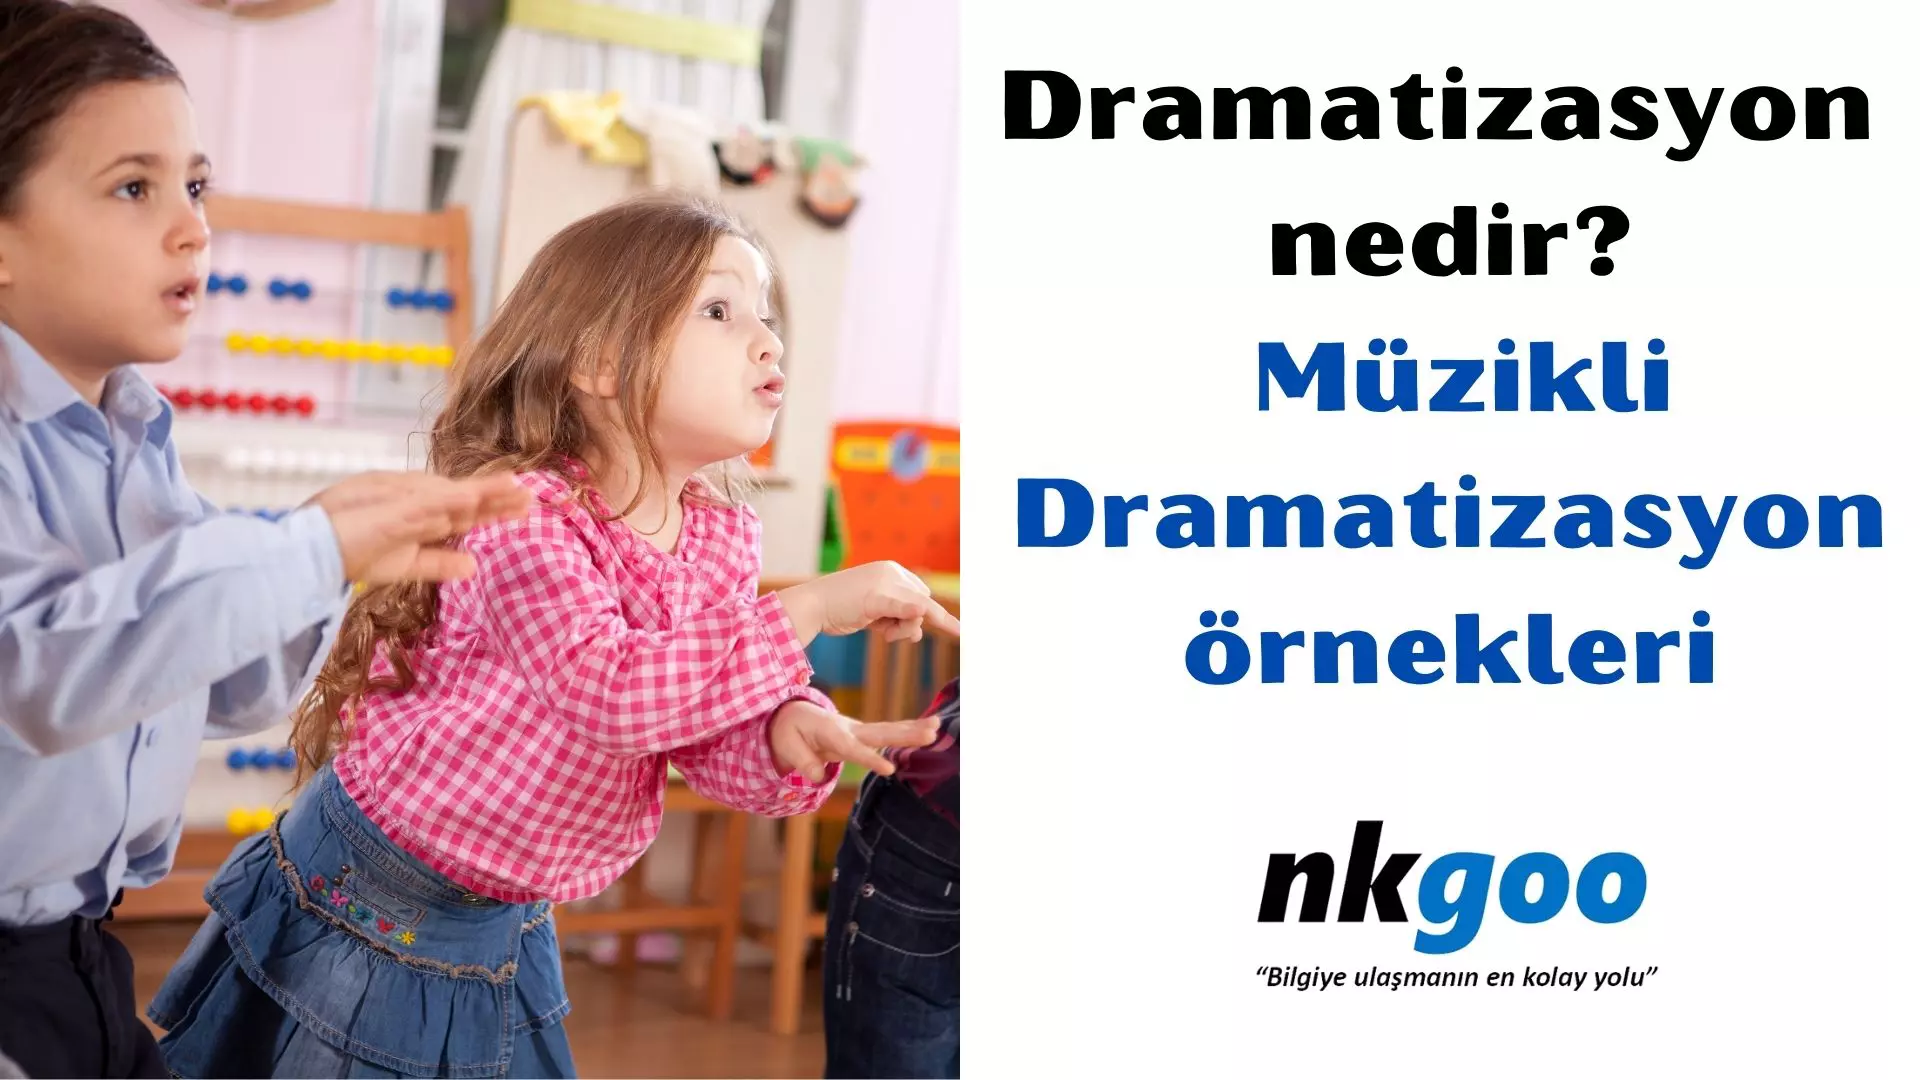 Dramatizasyon nedir? Dramatizasyon ne demek?